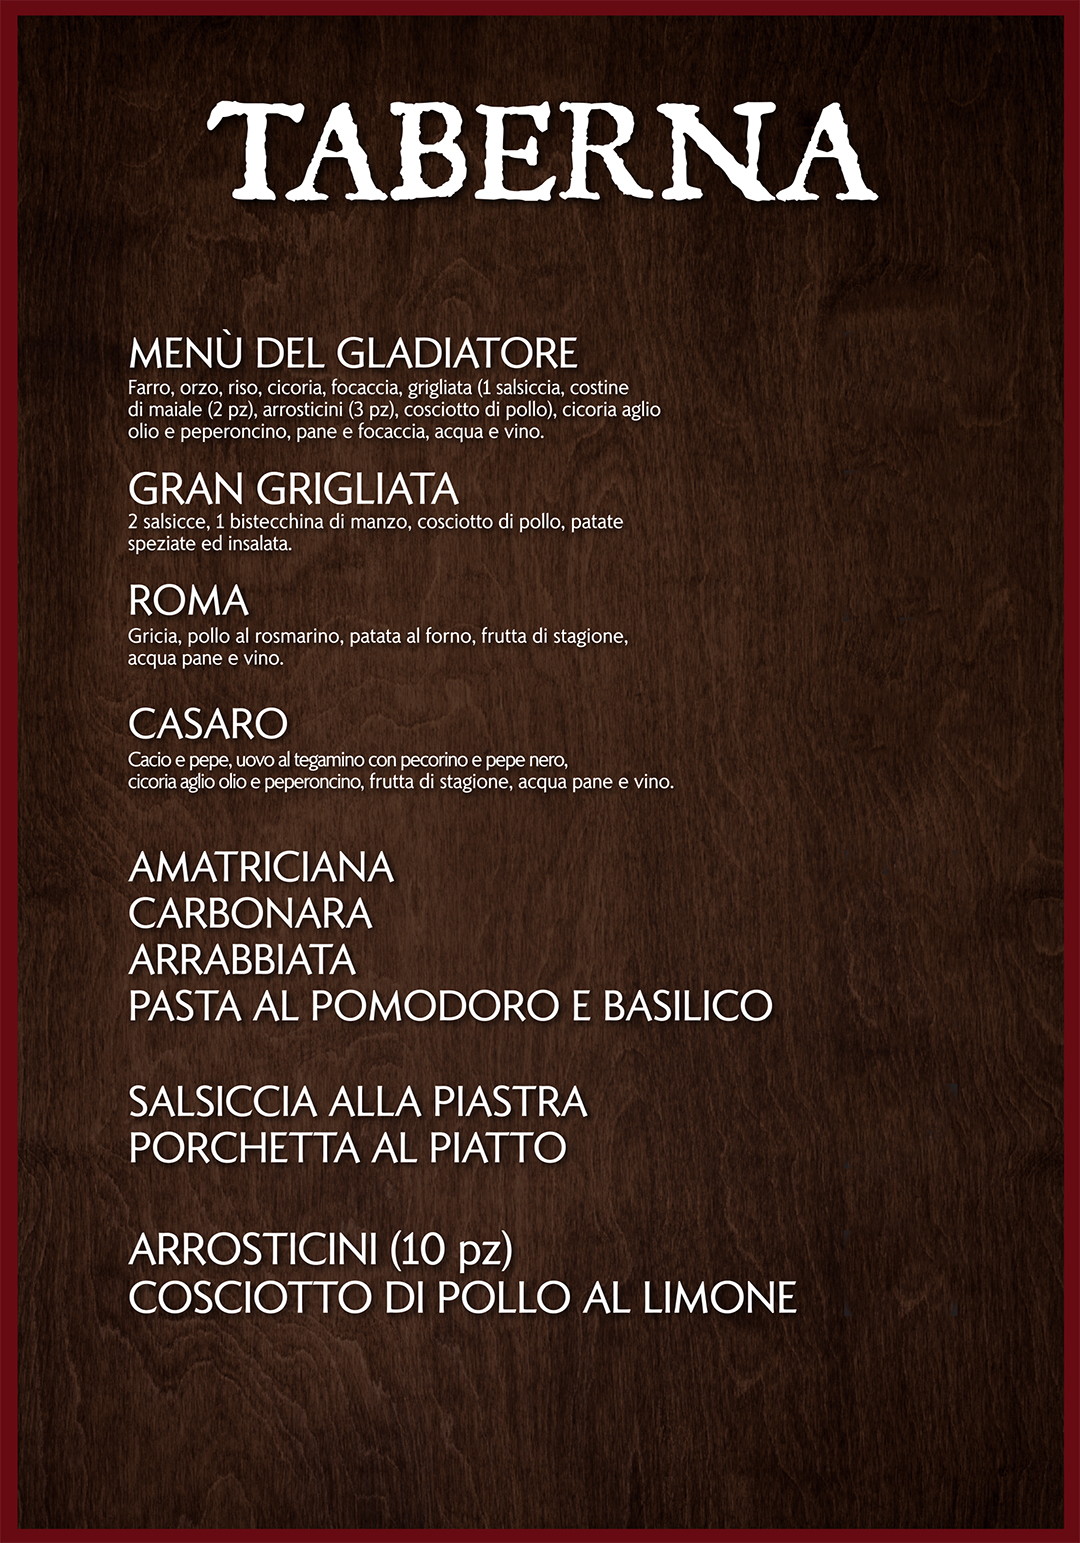 menu-ristorante-taberna